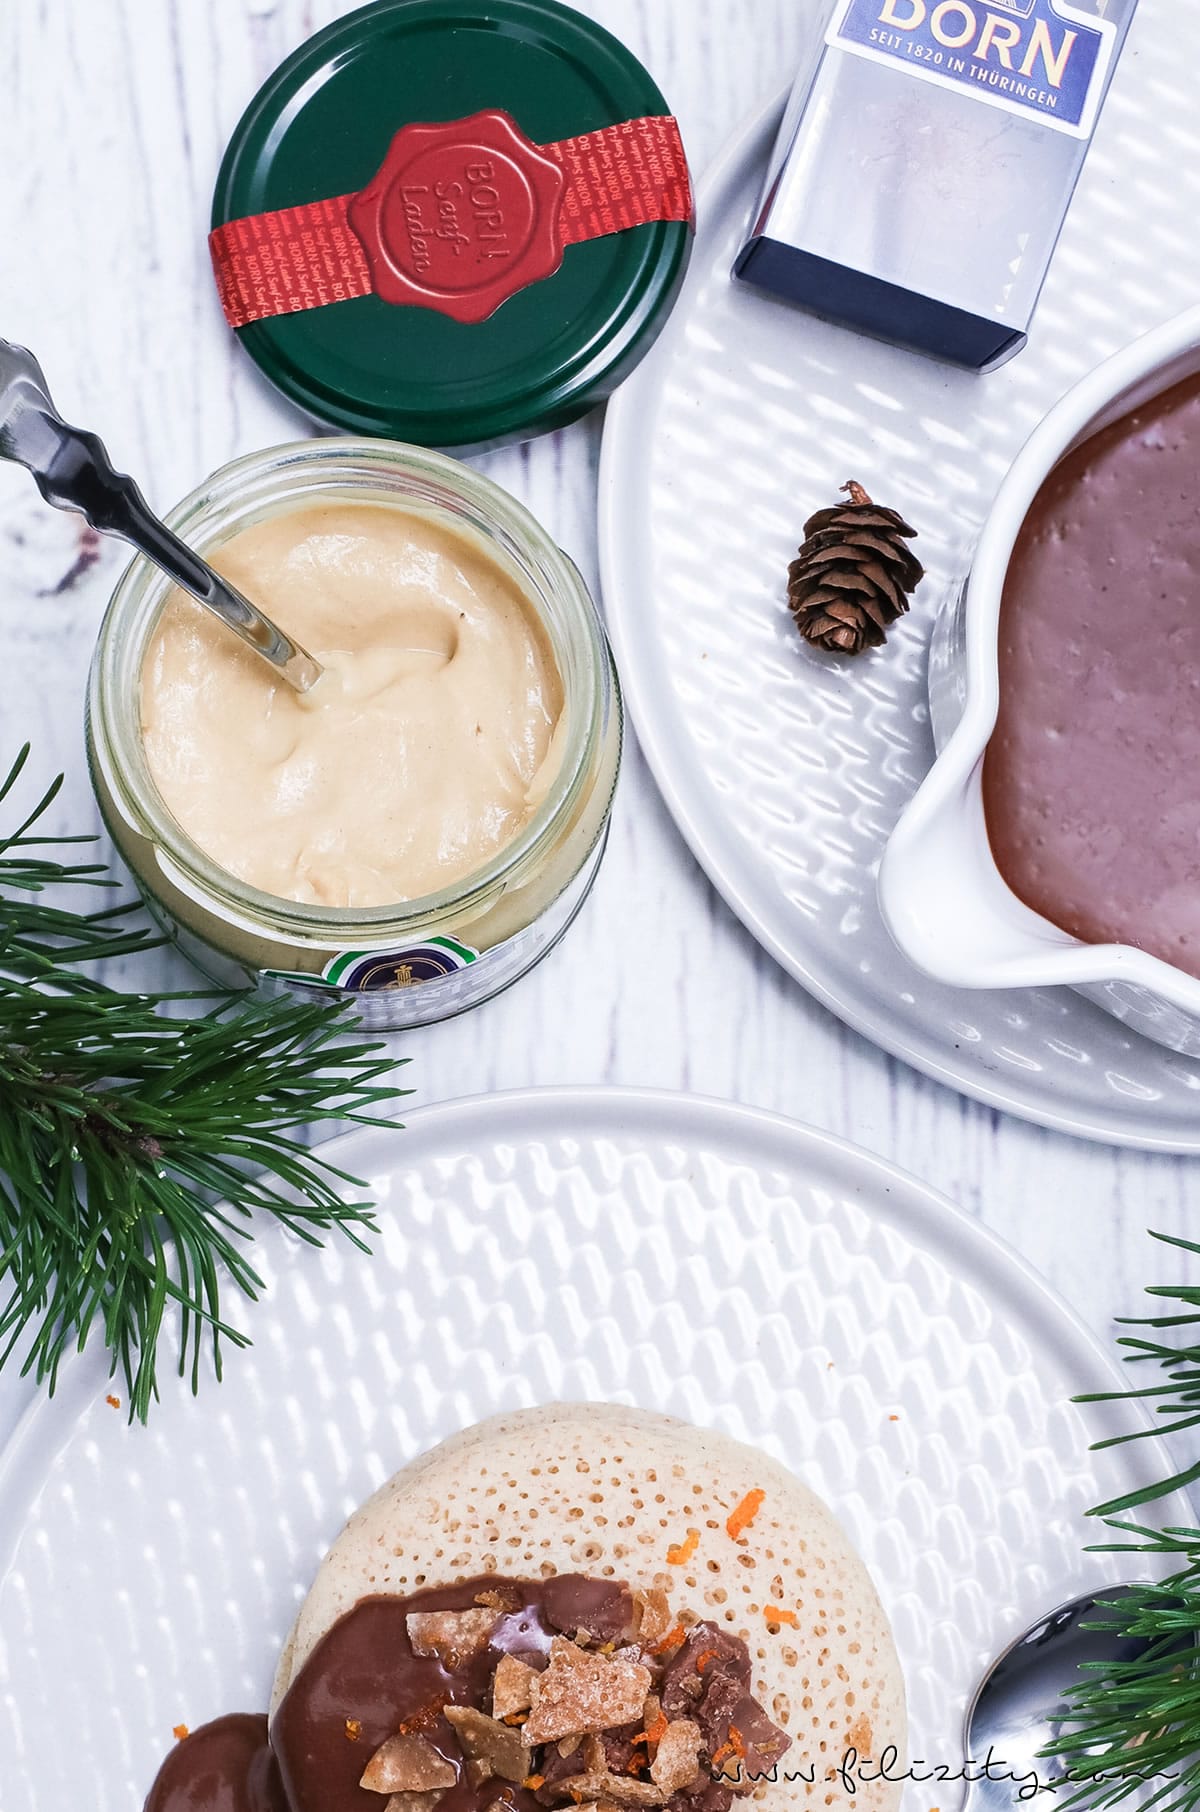 Weihnachts-Dessert: Rezept für Marokkanische Pfannkuchen (Baghrir) mit Schoko-Orangen-Senf-Soße, Orangenkaramell und Senfpralinen | Filizity.com | Food-Blog aus dem Rheinland #weihnachten #dessert #BORNsinternational #BORN